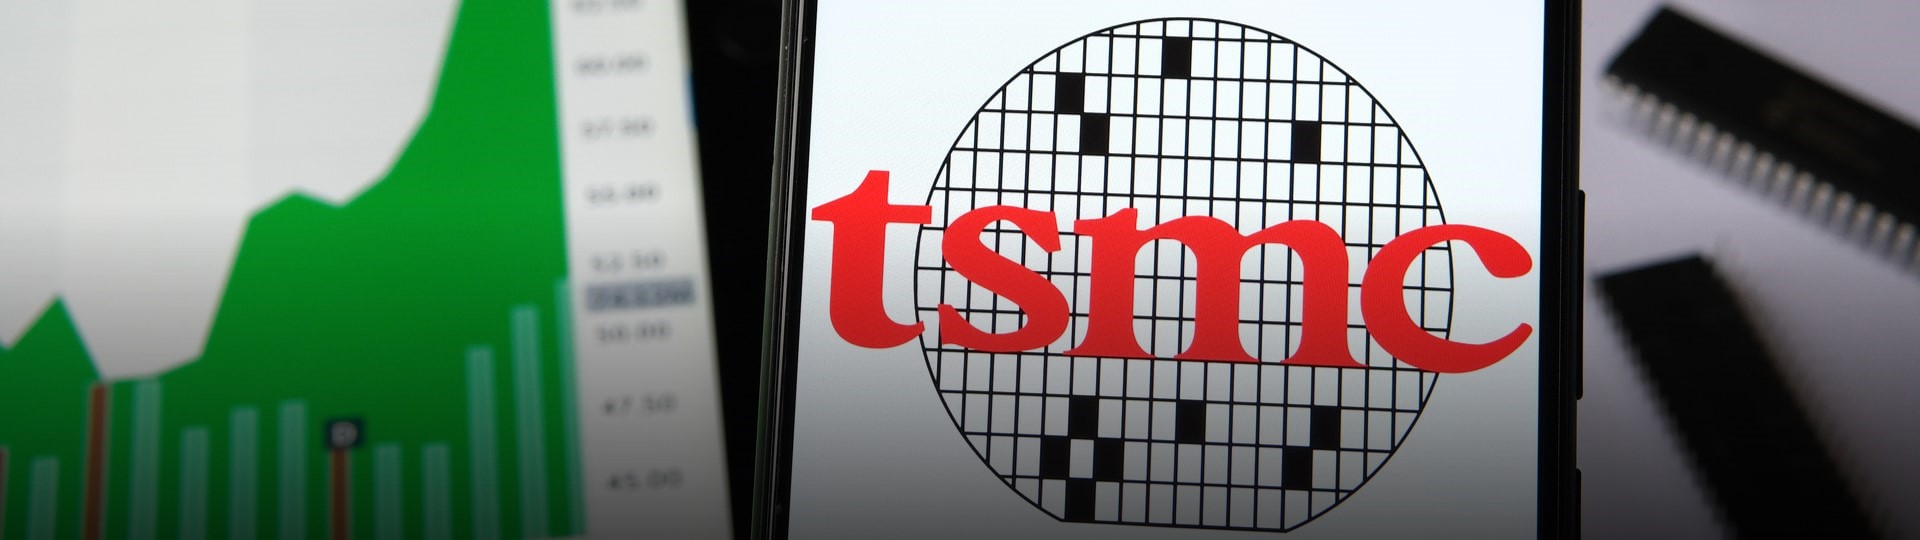 TSMC překonal Tencent a je nejhodnotnější firmou v Asii